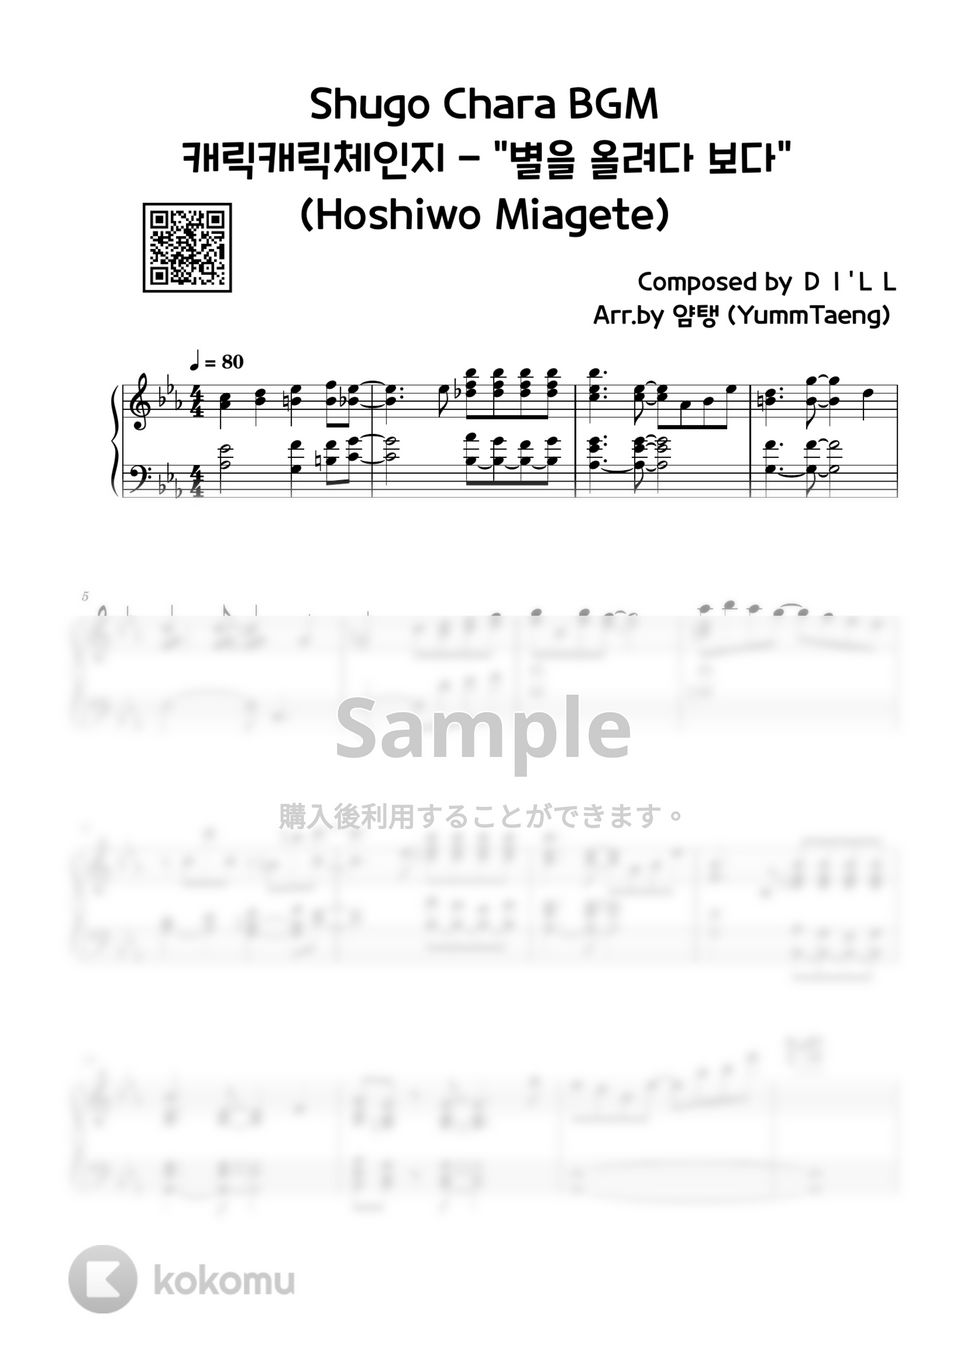 しゅごキャラ!BGM - Hoshi wo Miagete by YummTaeng